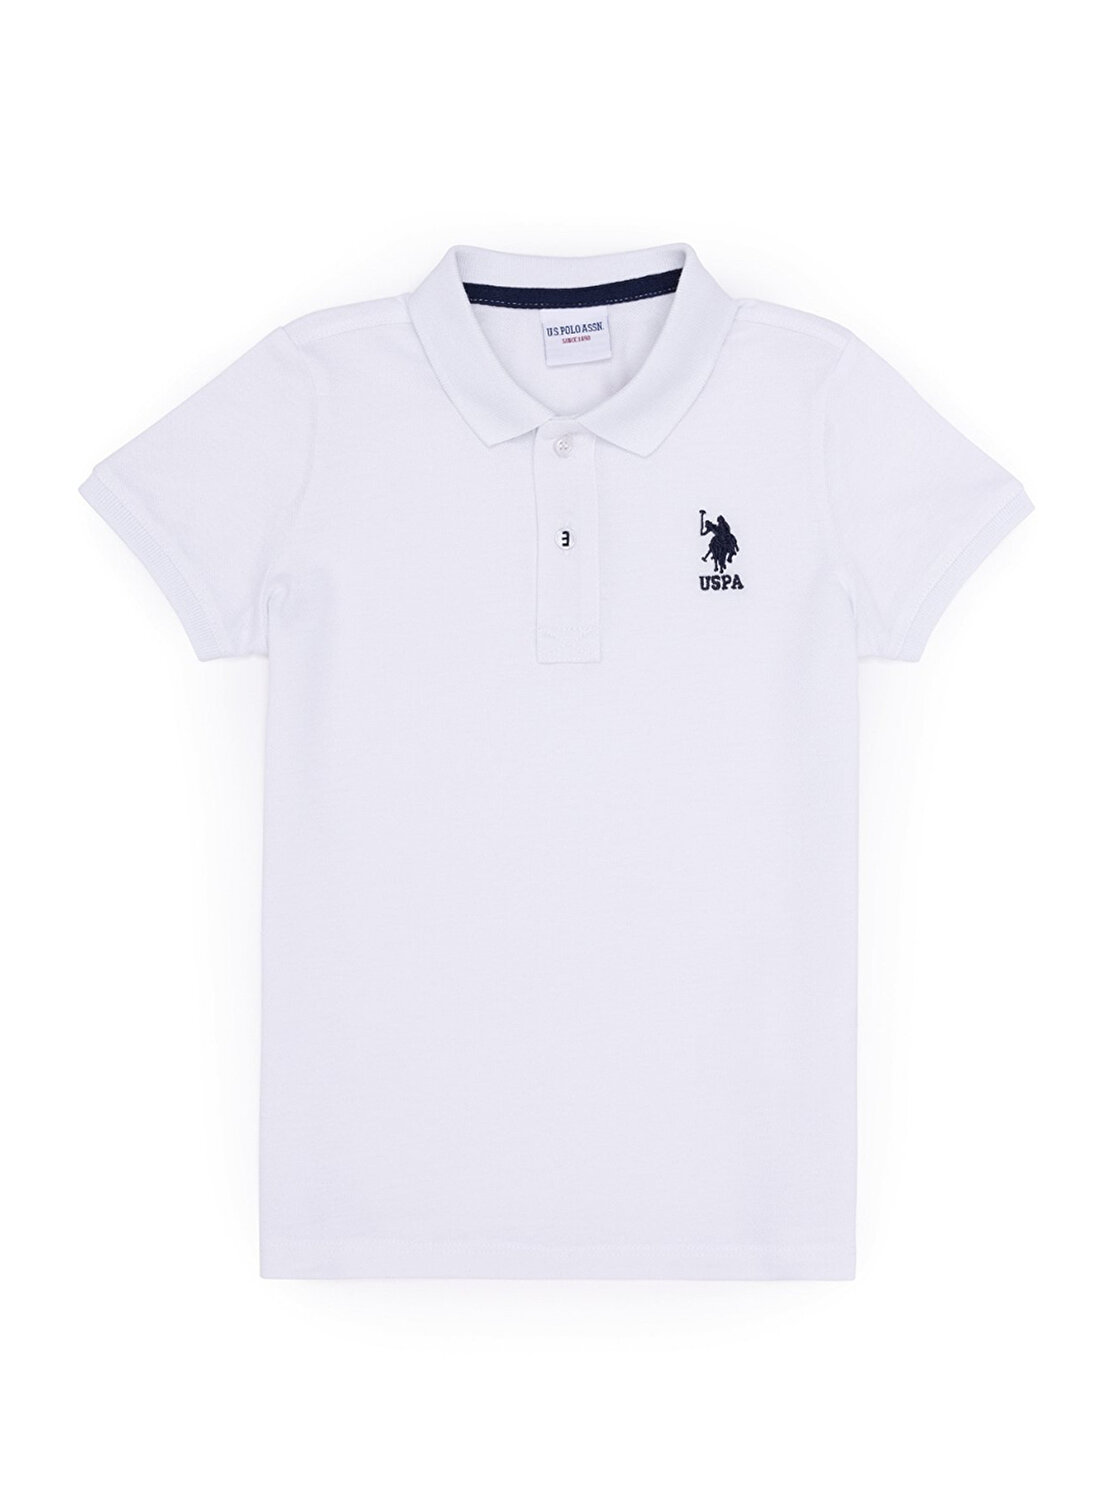 U.S. Polo Assn. Beyaz Erkek Çocuk Polo Yaka Kısa Kollu Düz Polo T-Shirt TP01IY023  